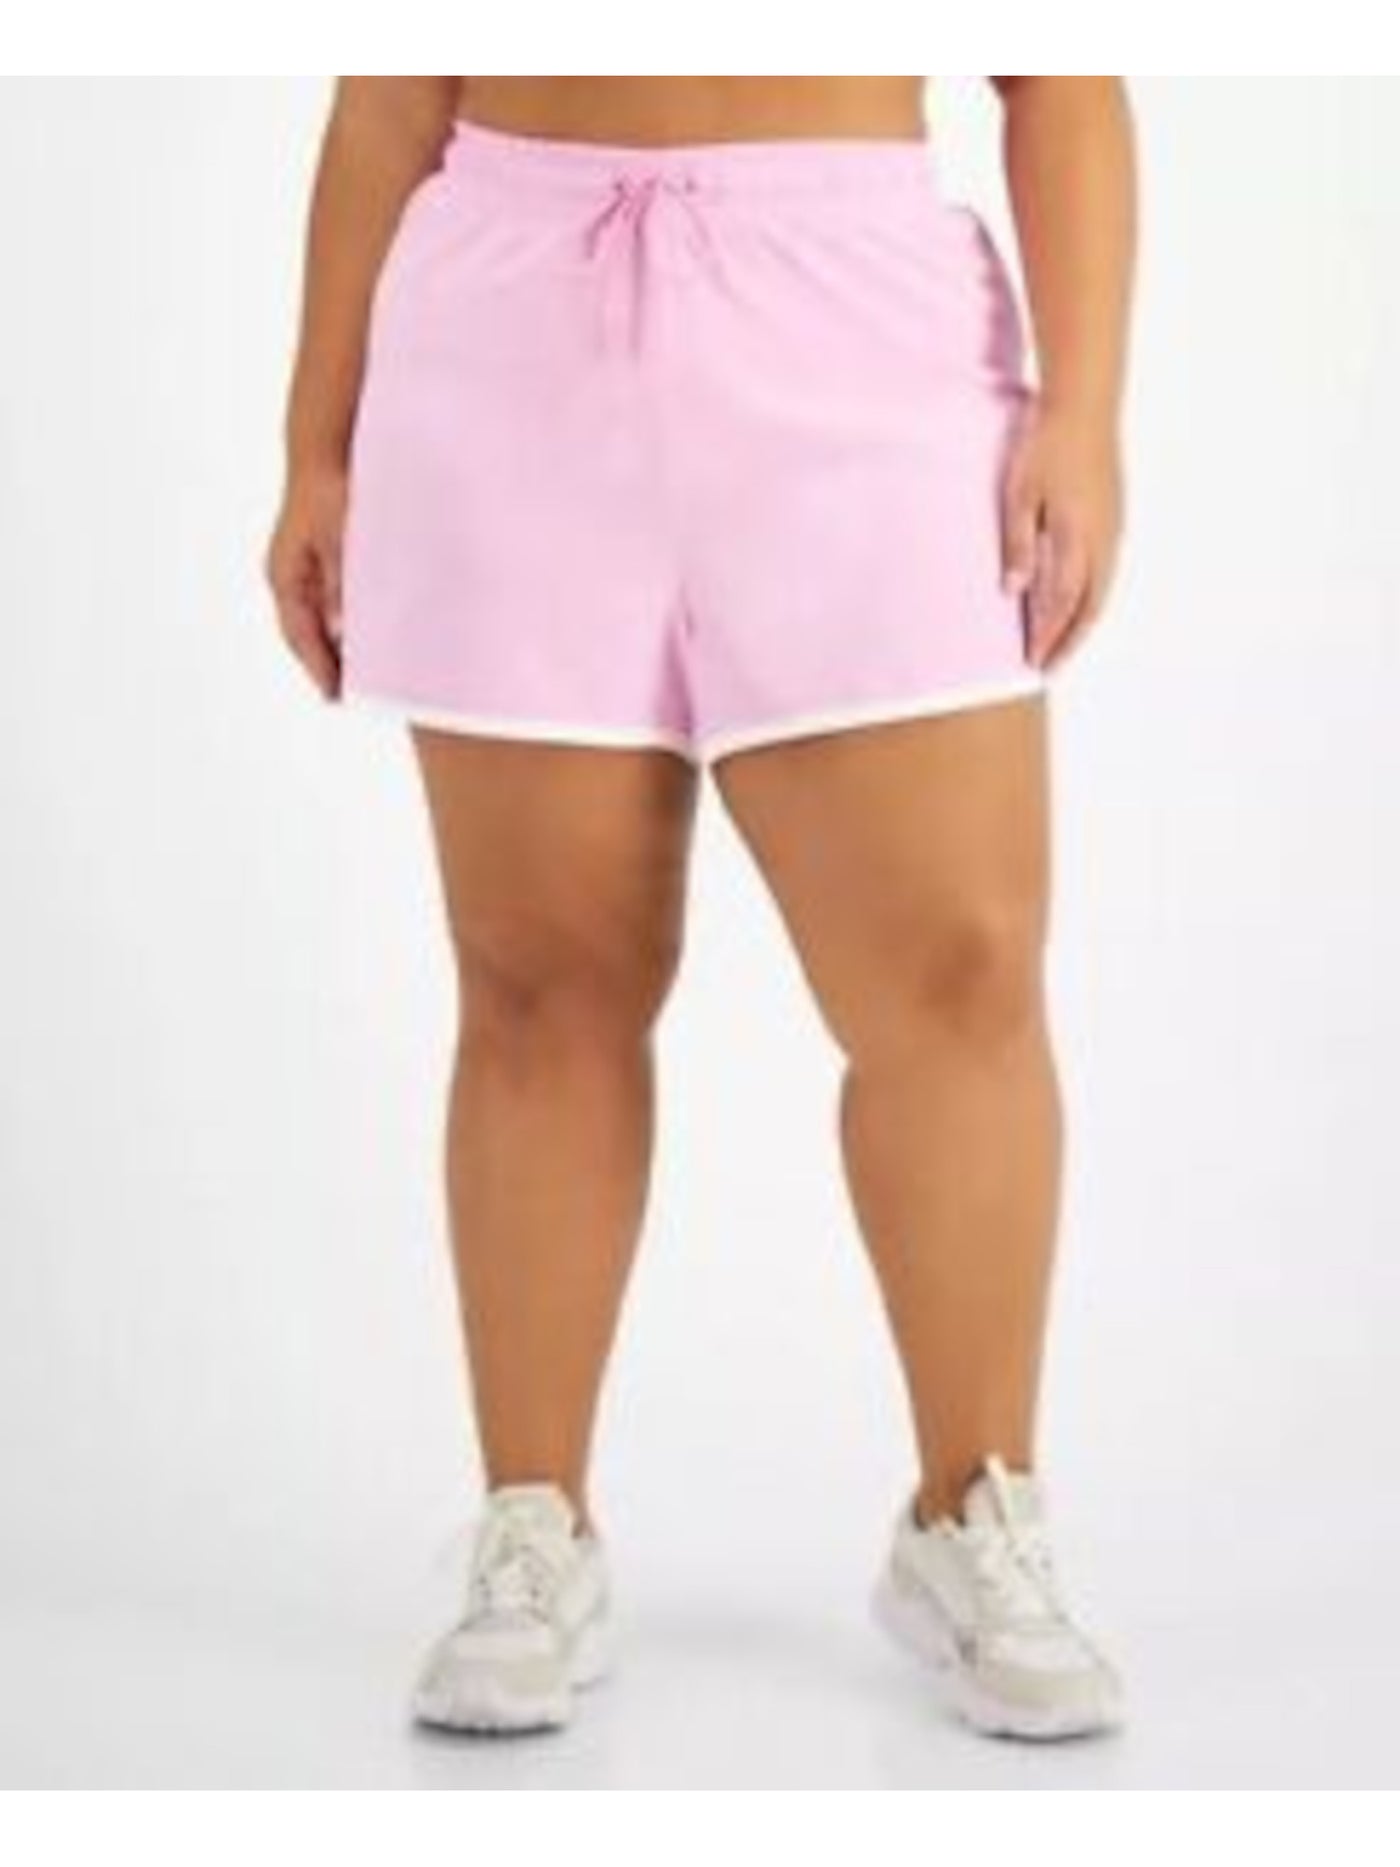 IDEOLOGY Womens Pink Lined Elastic Waist Running High Waist Shorts Plus 3X